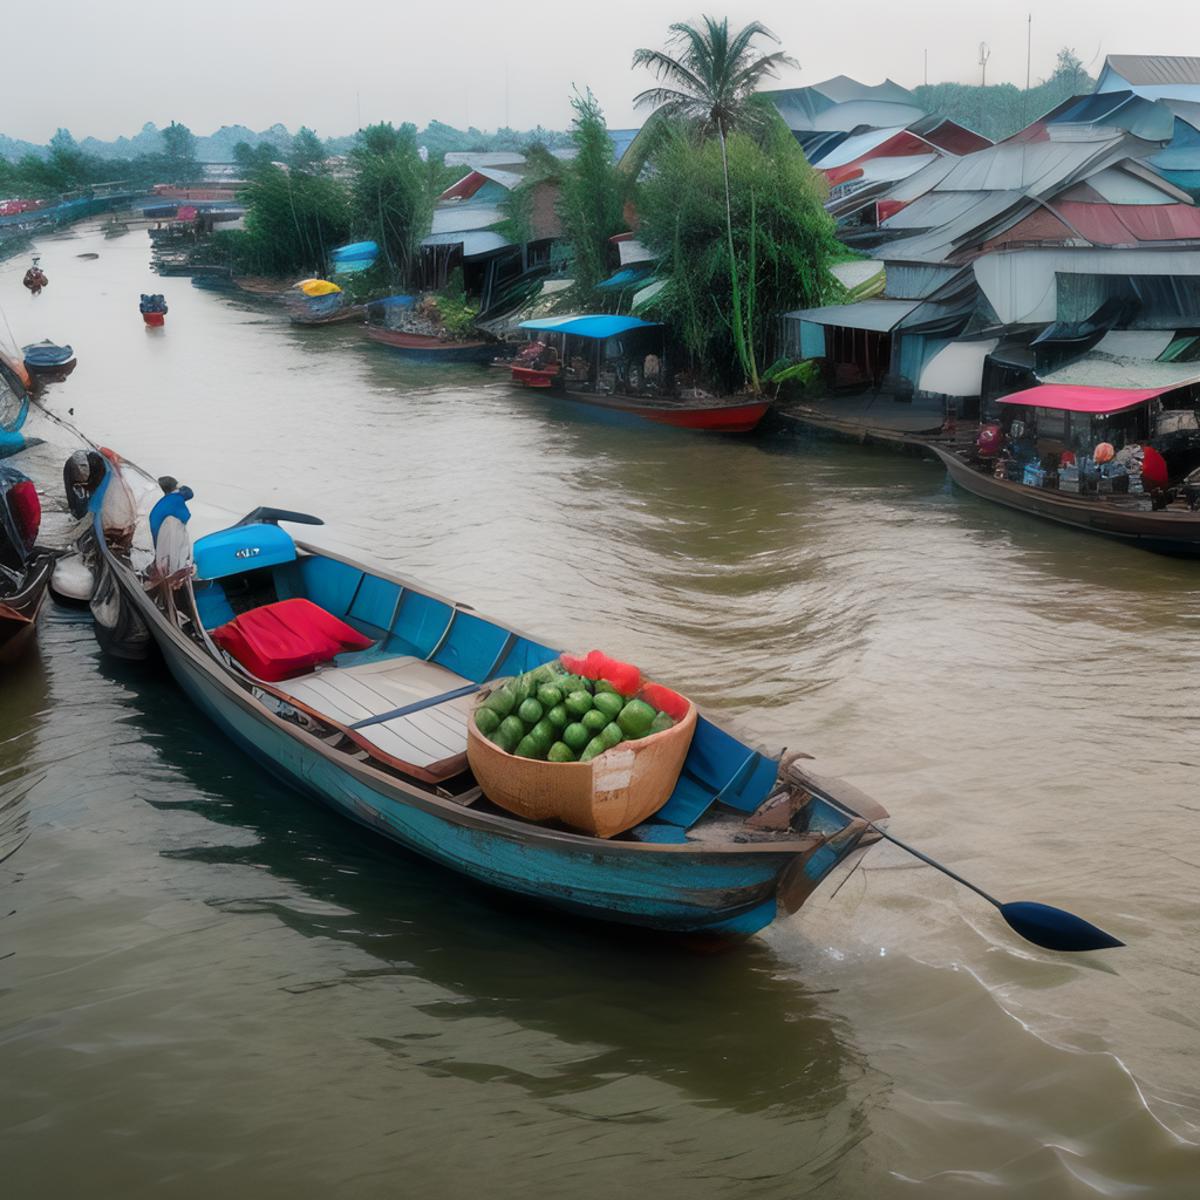 TQ - Cai Rang Floating Market | Chợ nổi Cái Răng | Background LoRA image by tluami013575